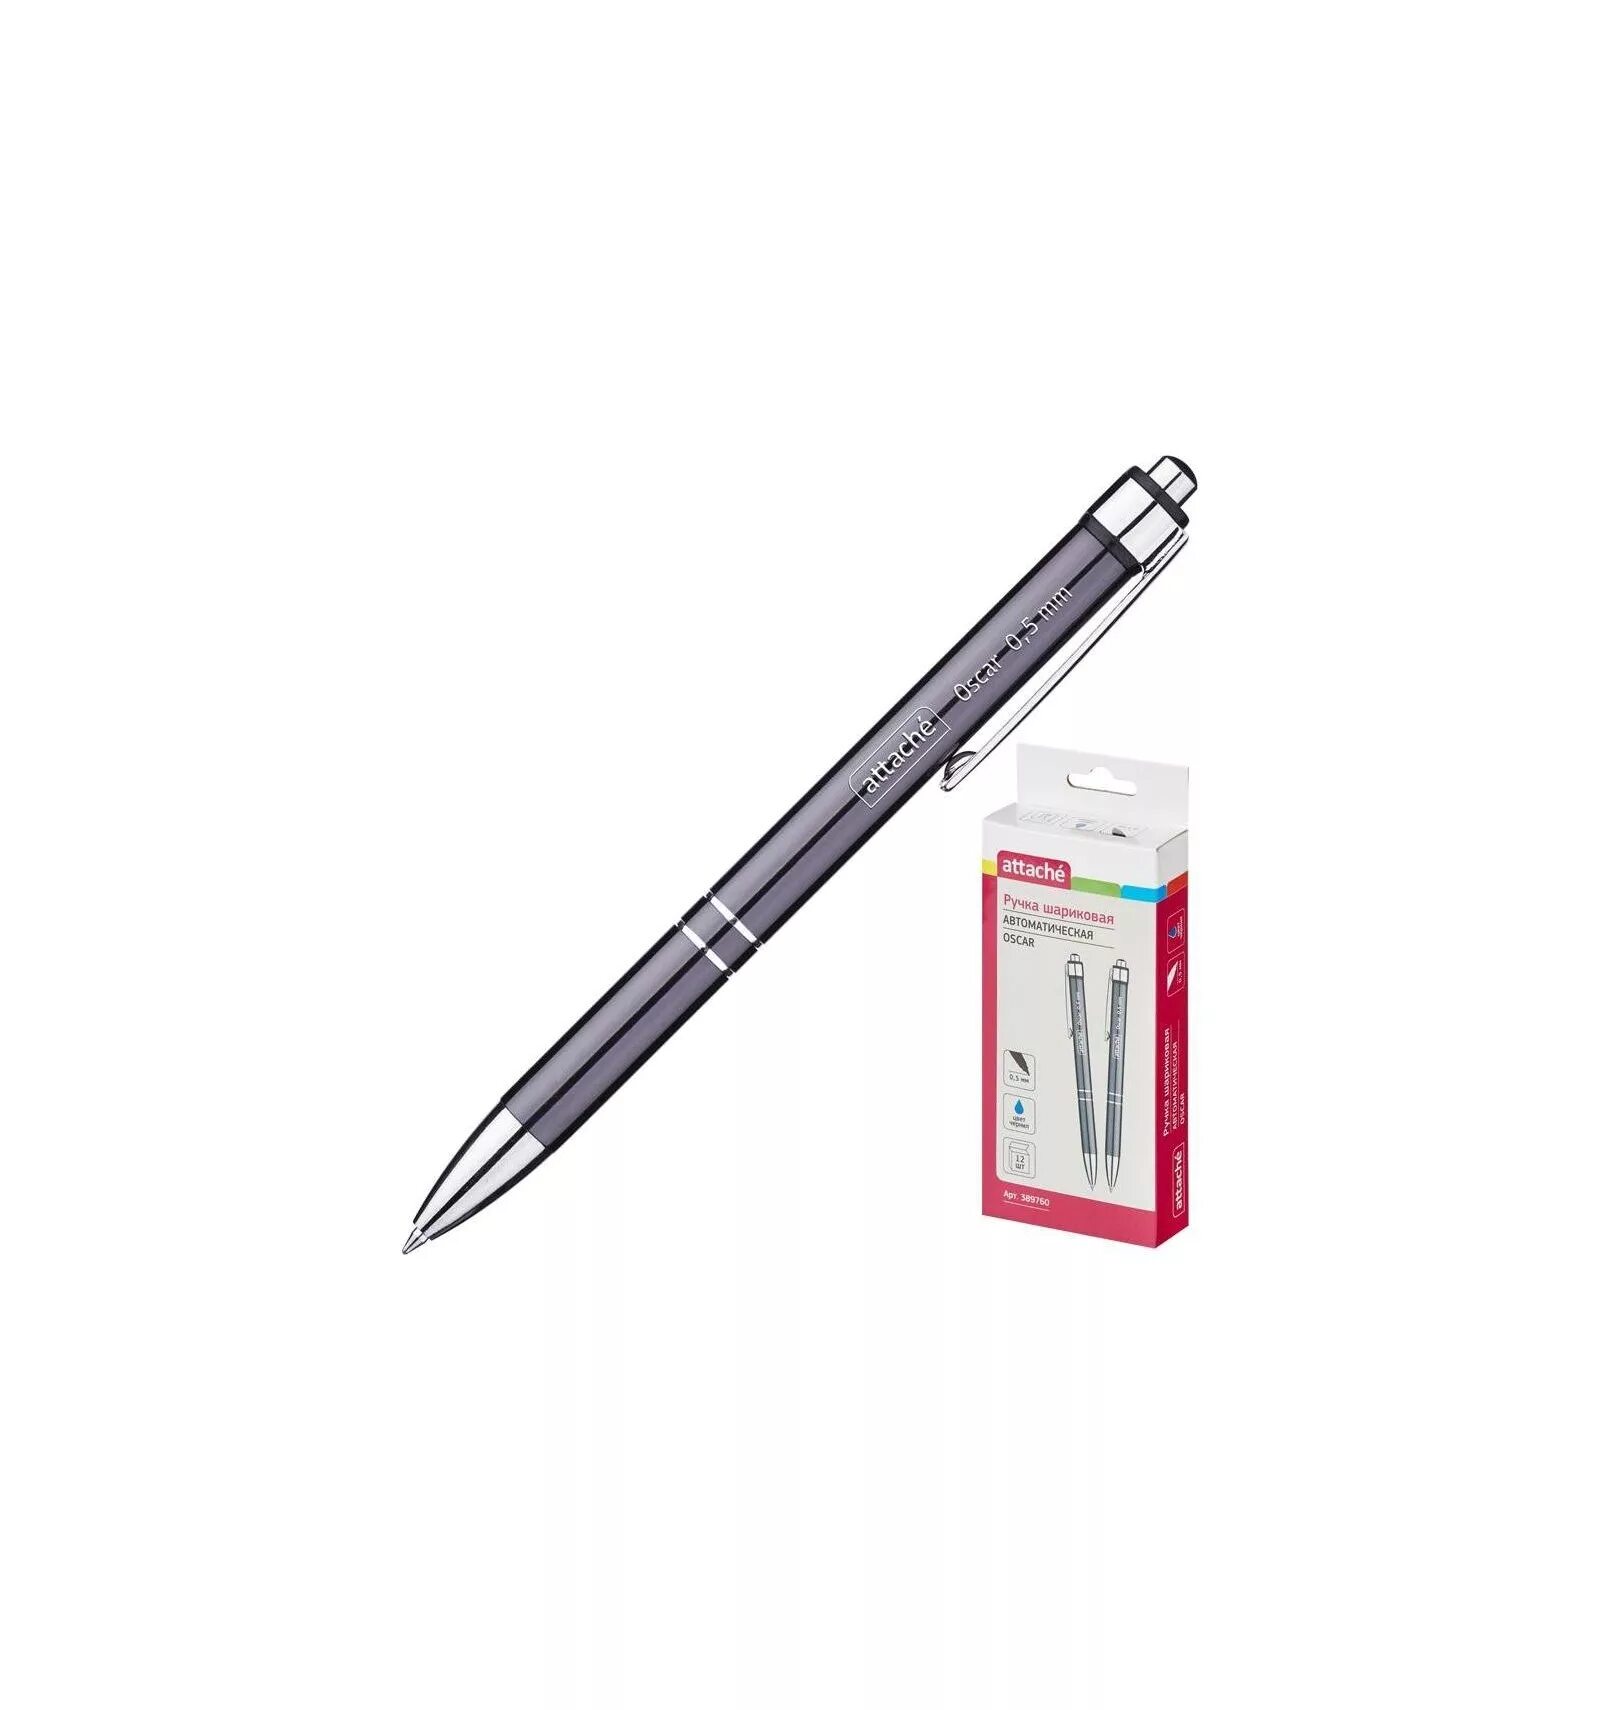 Ручка attache 0.5. Attache Oscar 0.5 мм. Ручка Attache Oscar. Ручка Attache 0.5mm. Ручка синяя шариковая 0.5 мм автоматическая Attache.